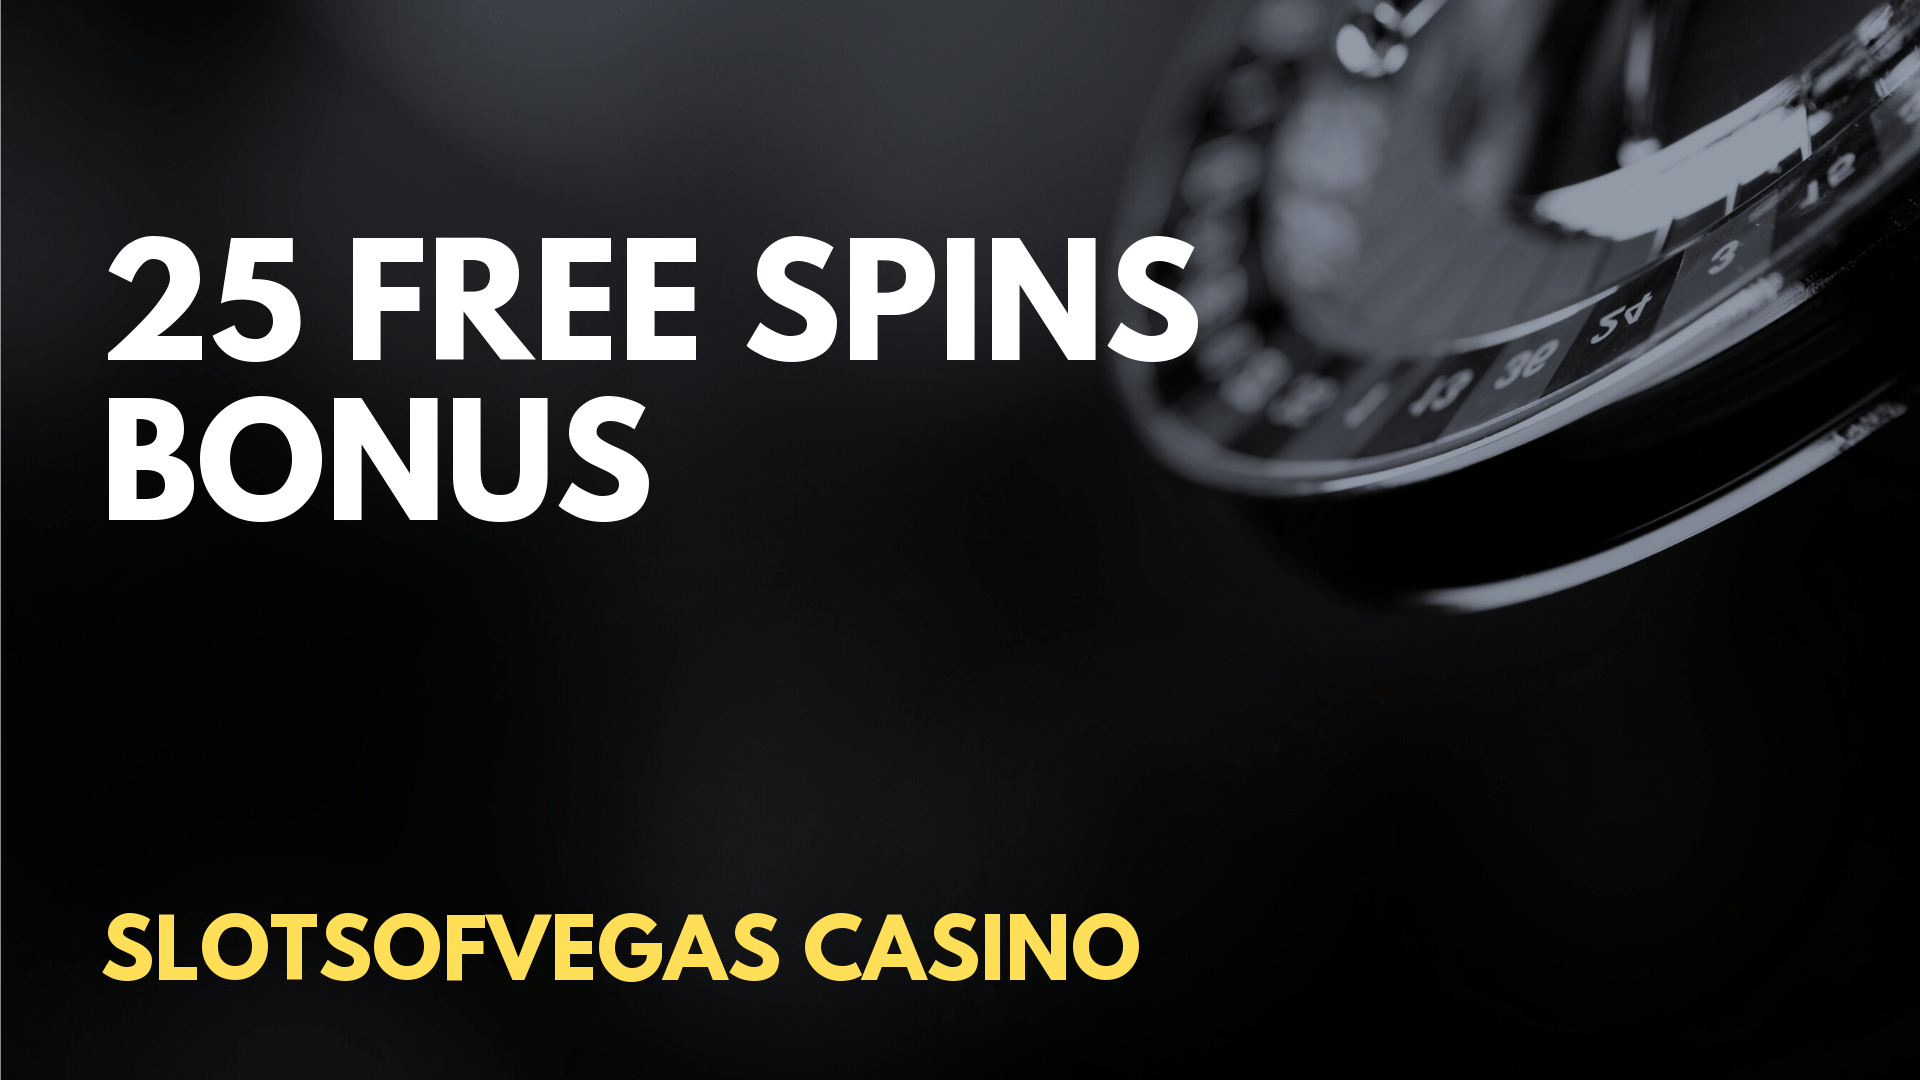 no deposit online casino free spins